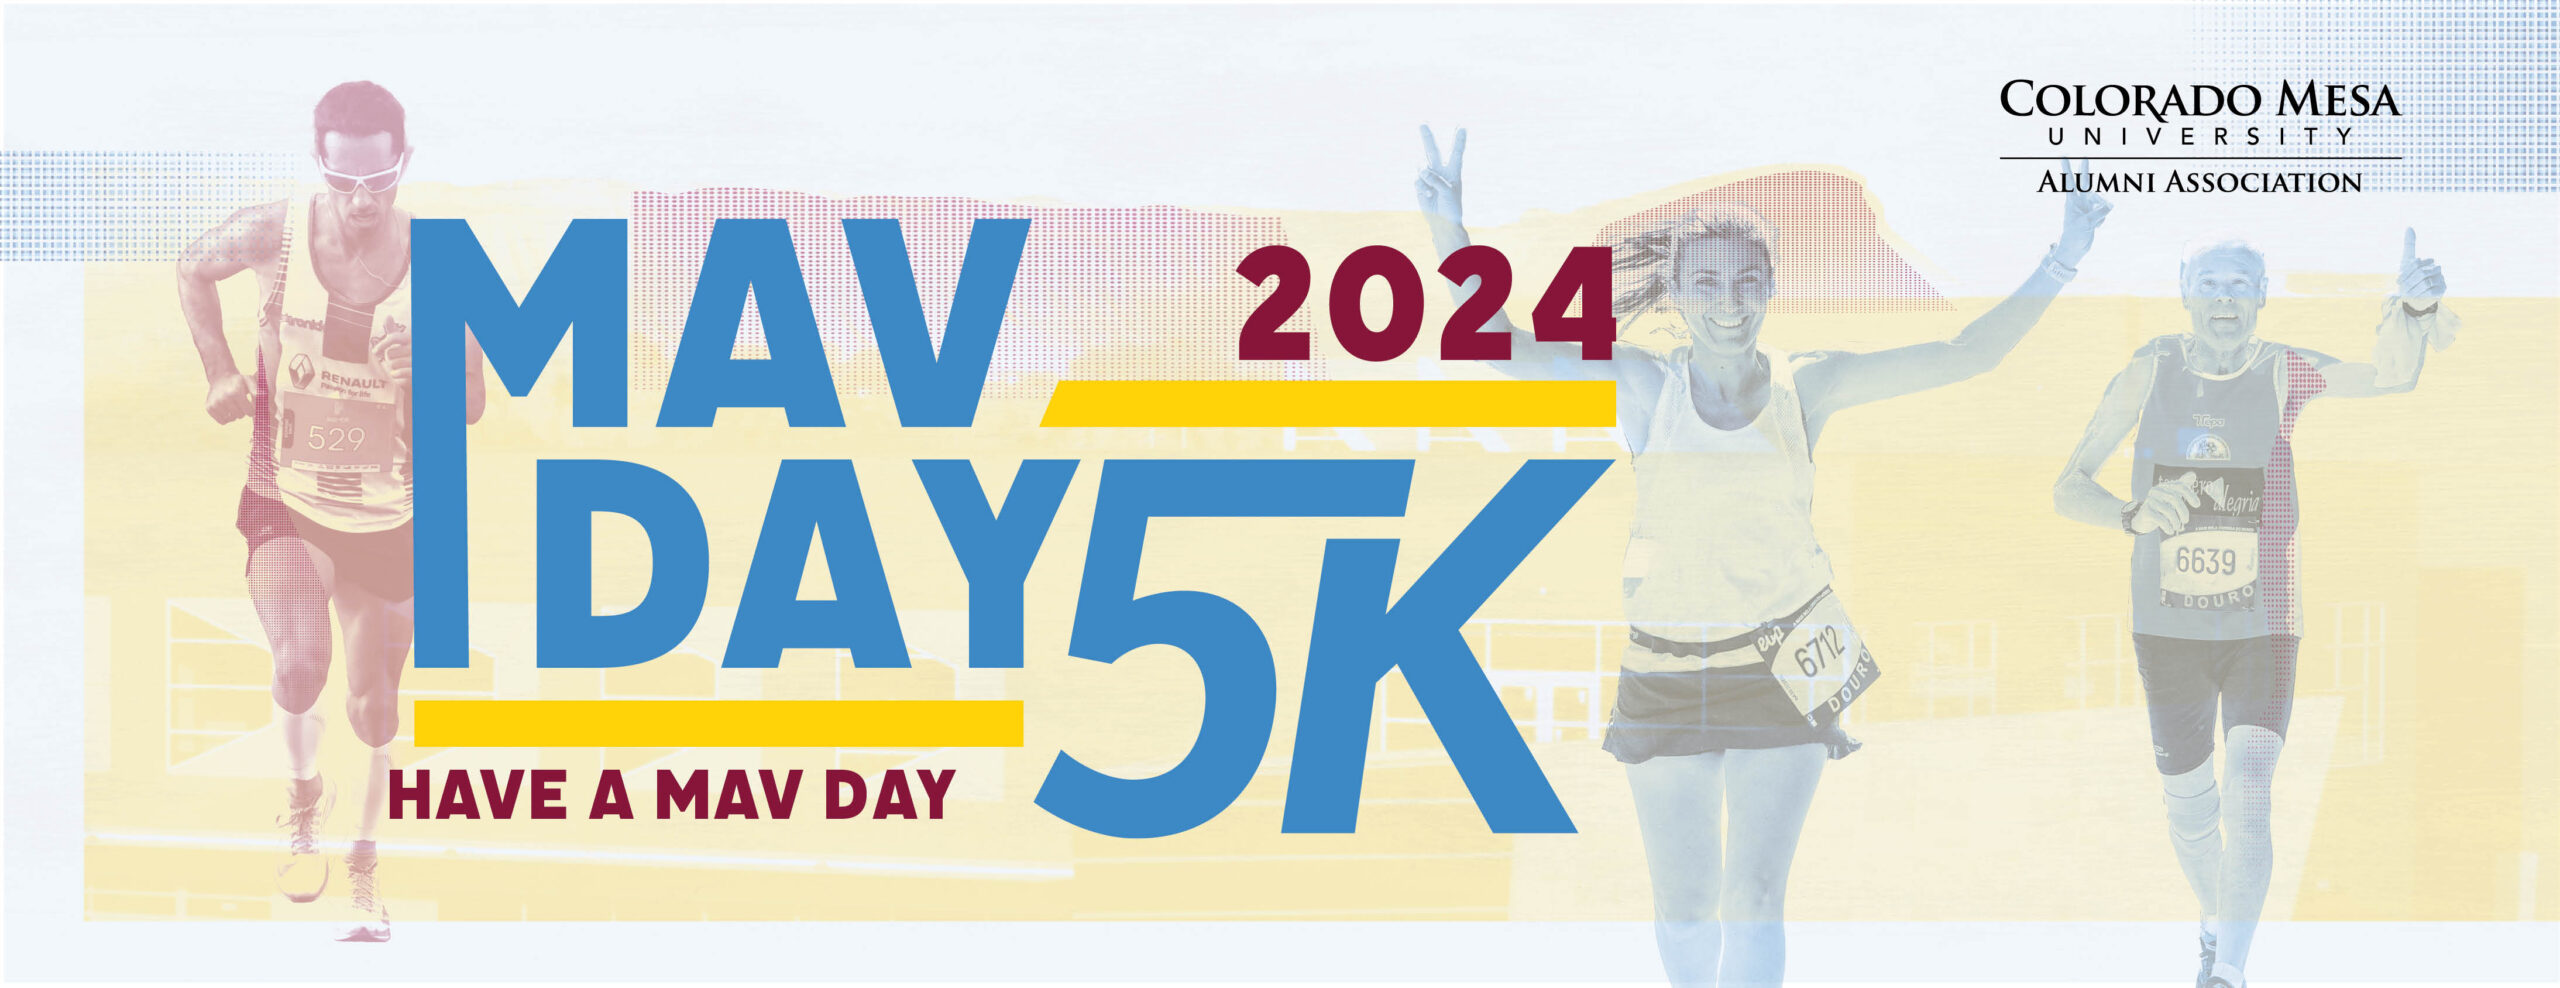 Mav Days 5K logo on RaceRaves